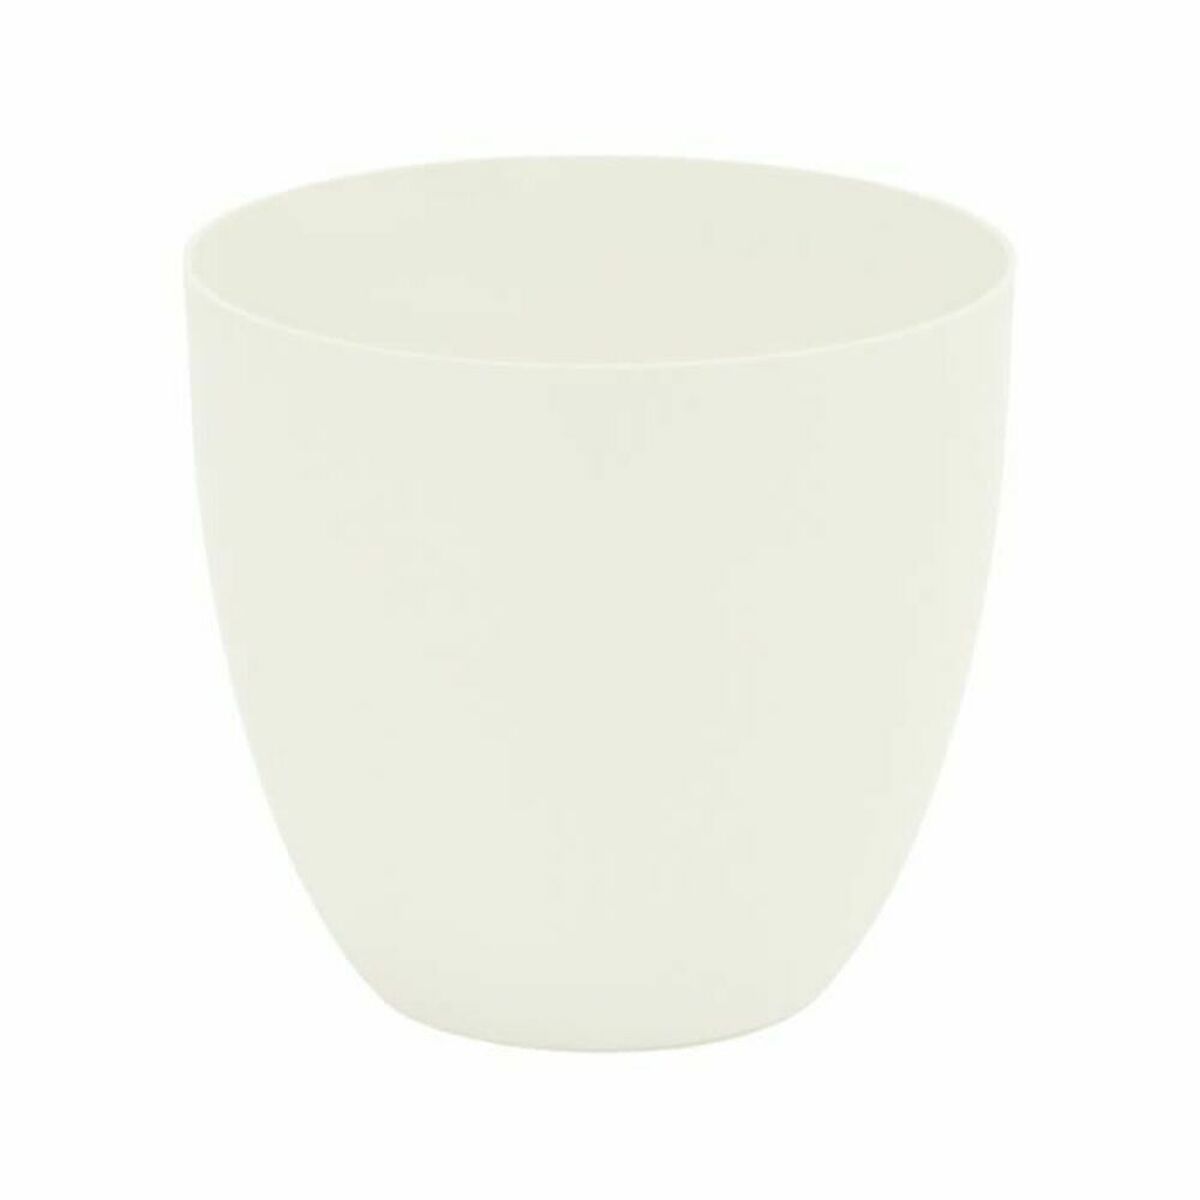 Pot Plastiken Blanc polypropylène (Ø 38 cm)